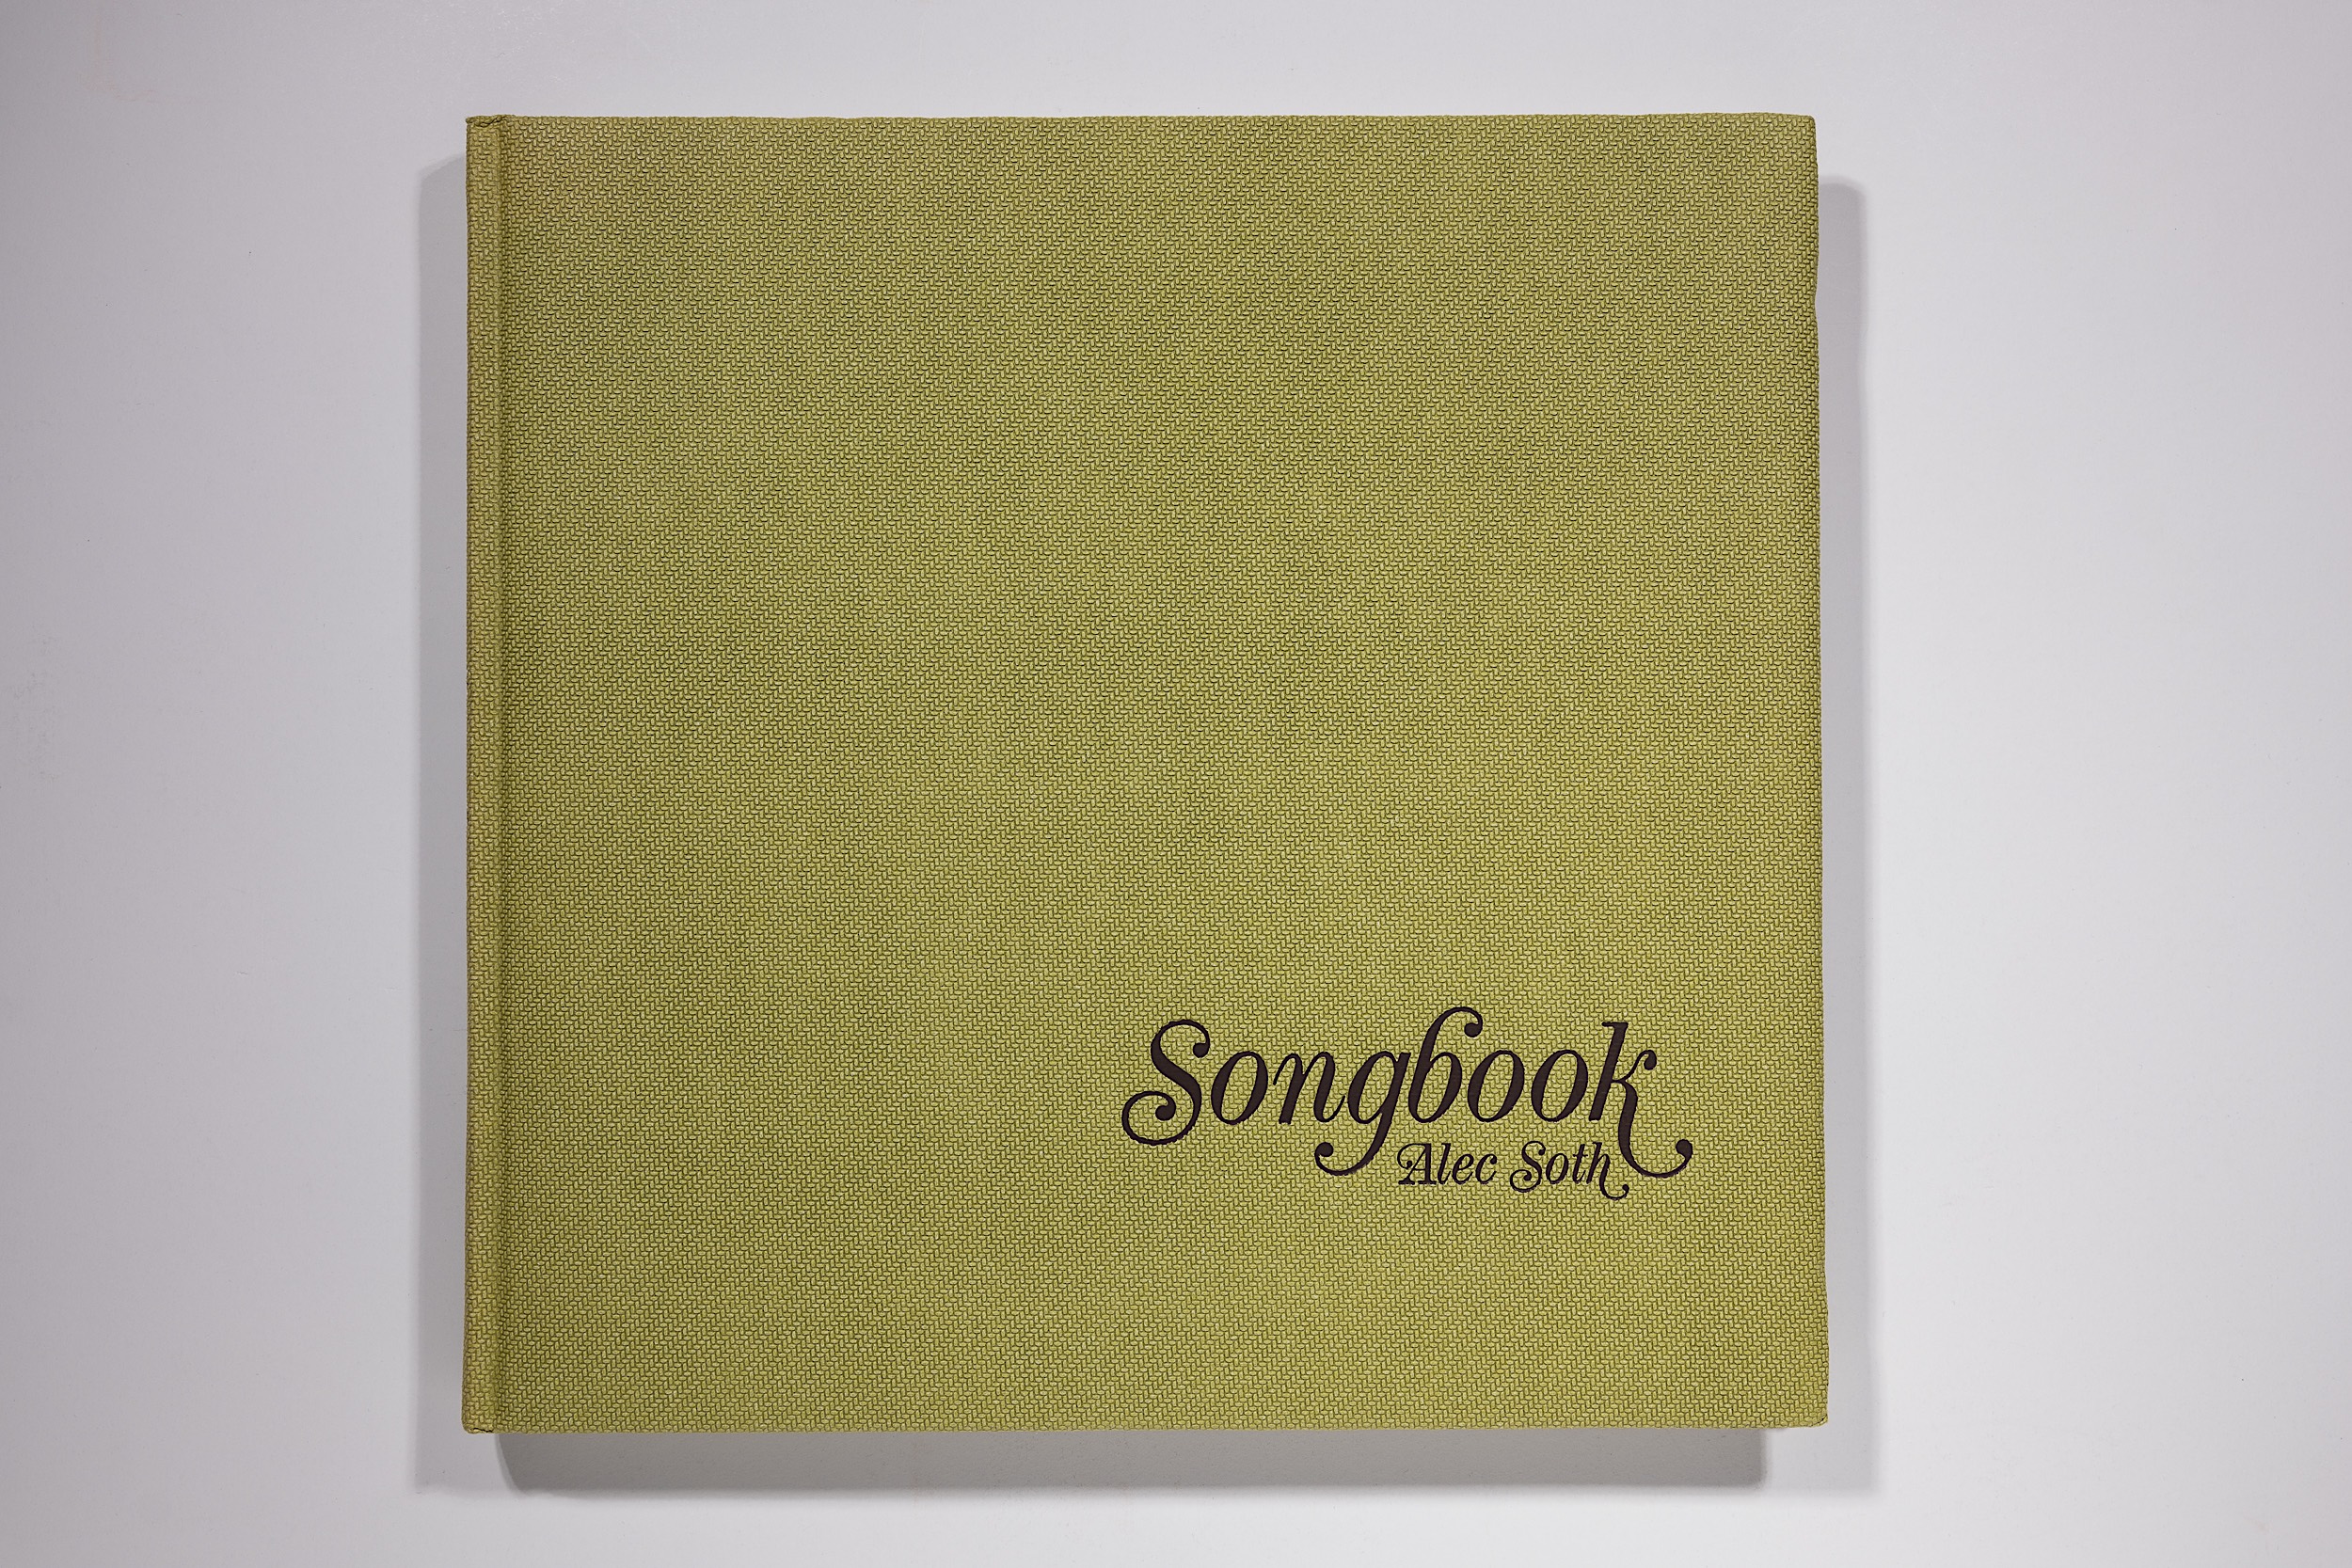 Alec Soth - Songbook Image 1